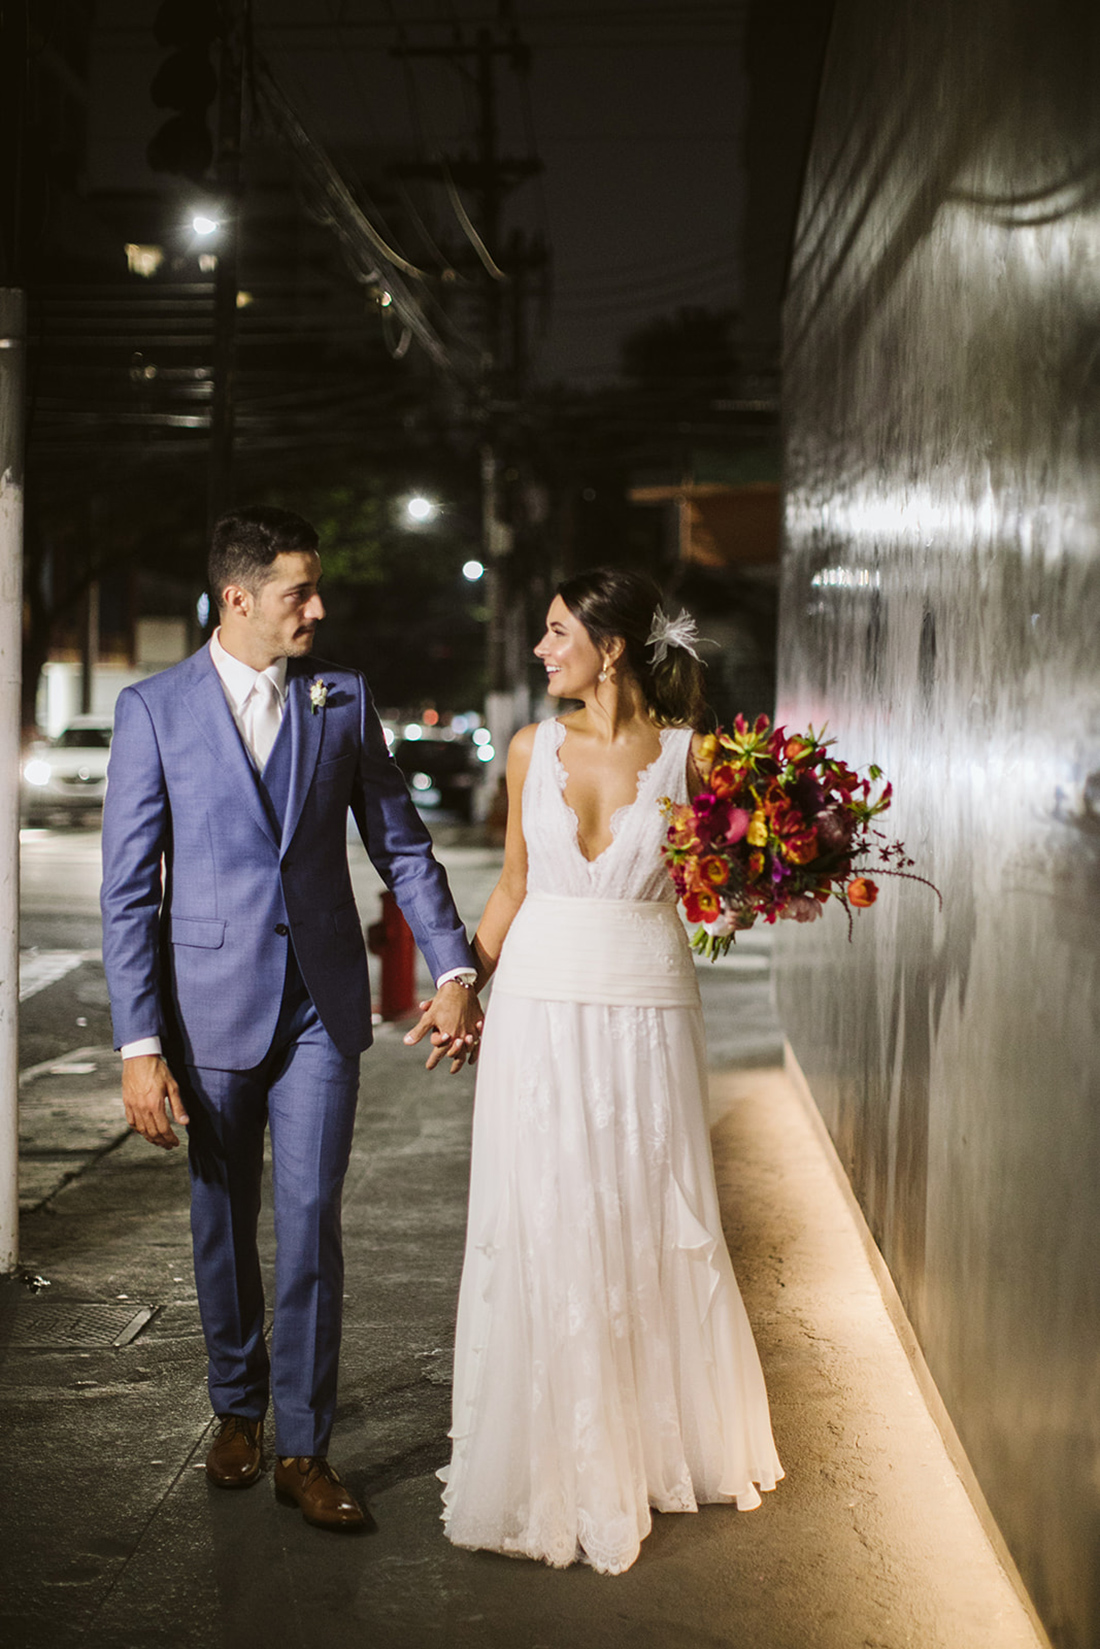 Gabi e Marcelo | Casamento contemporâneo, leve e divertido, por Stéfanie Belo